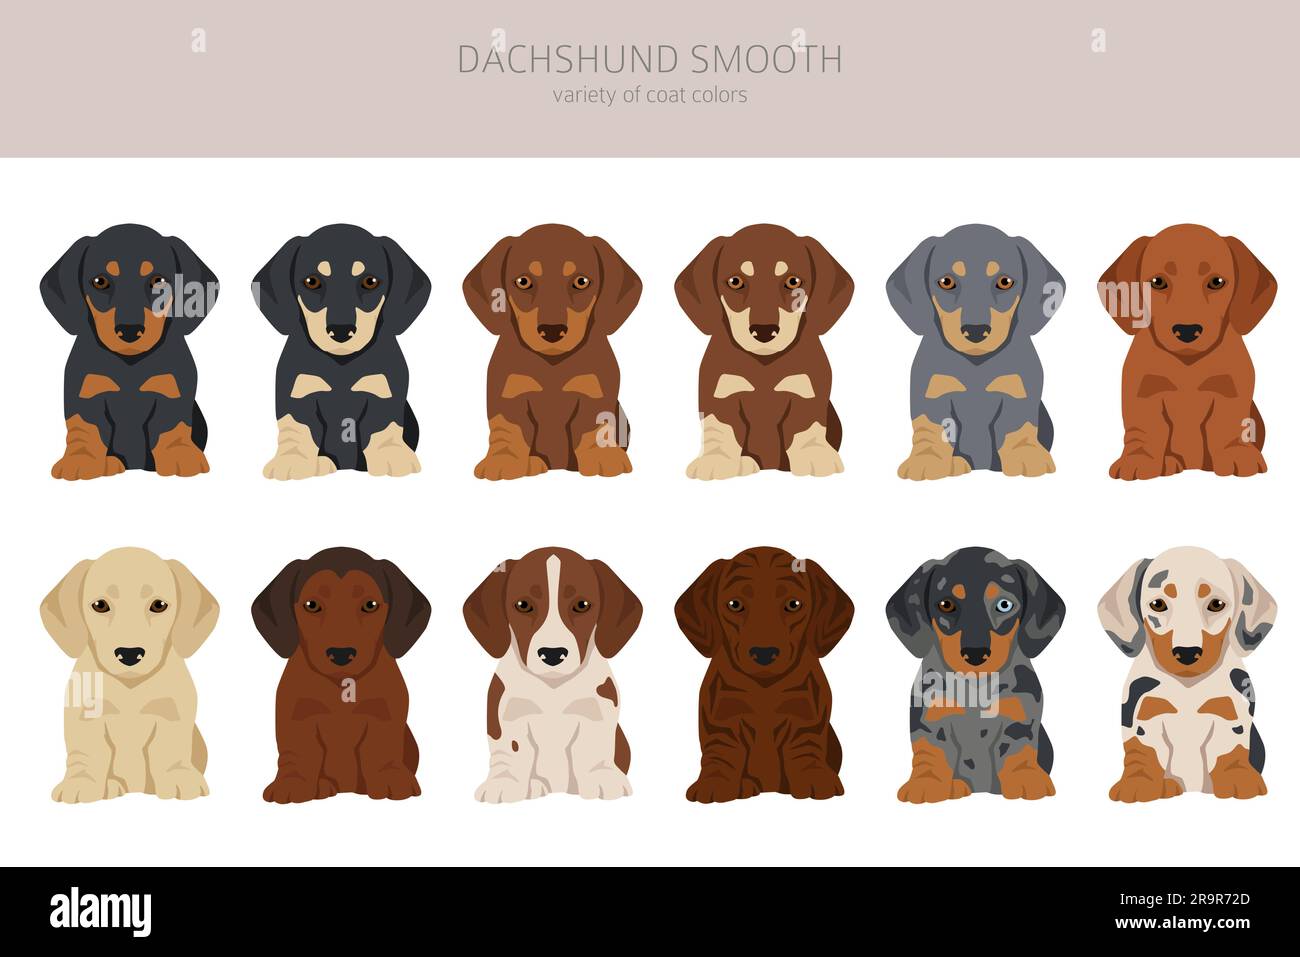 Clipart dei cuccioli dai capelli corti dachshund. Diverse pose, set di colori del rivestimento. Illustrazione vettoriale Illustrazione Vettoriale